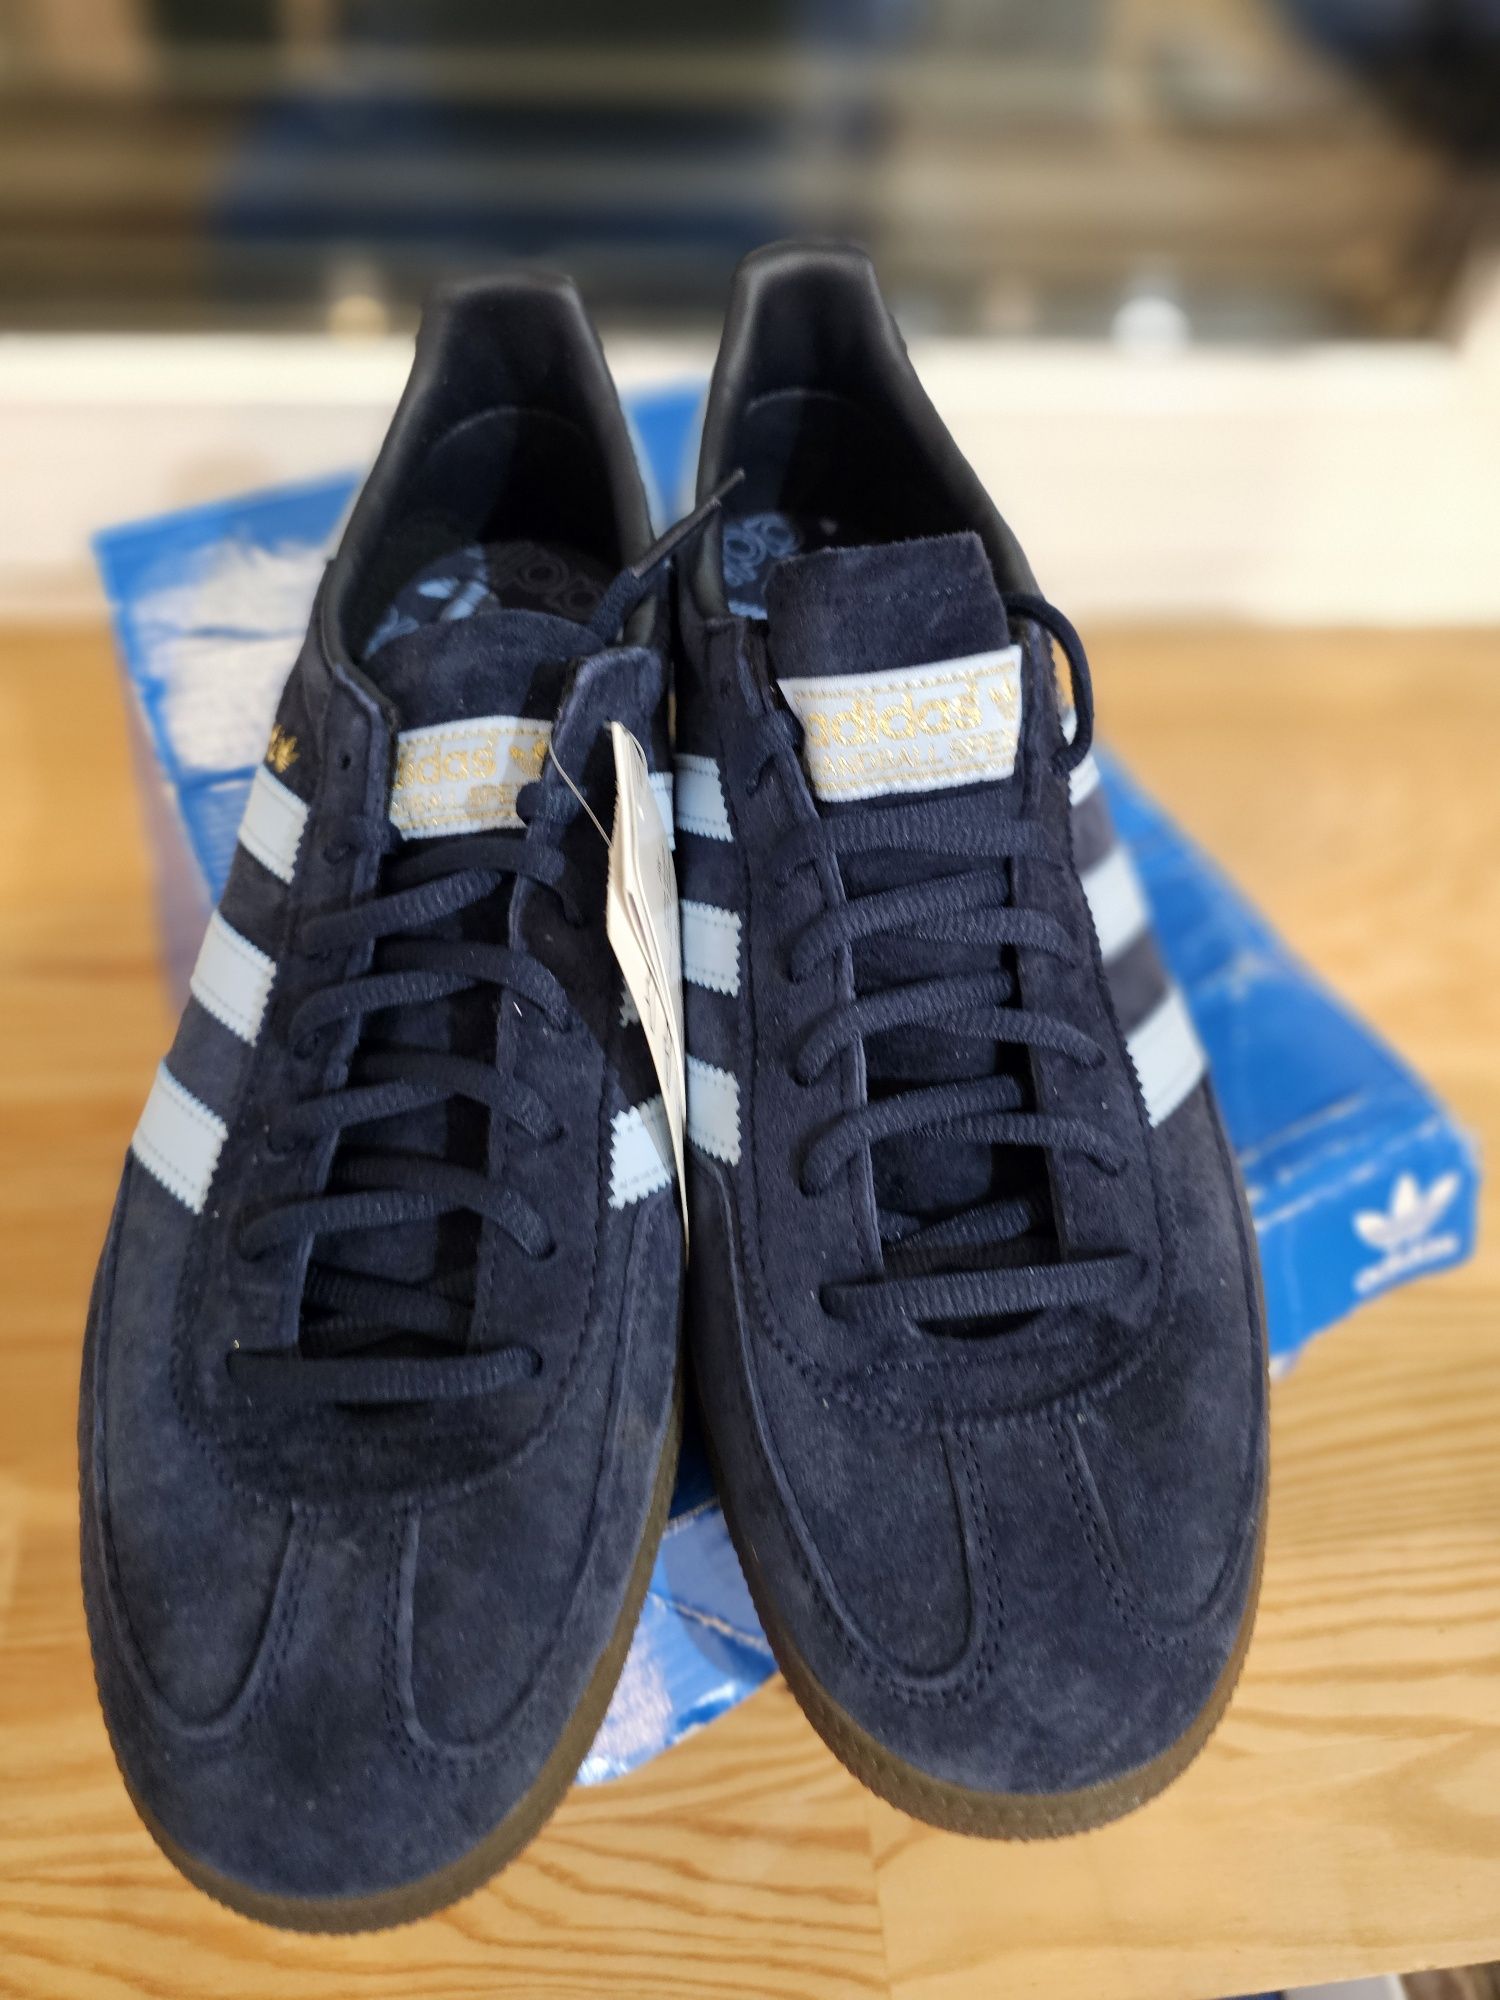 Buty nowe Adidas handball spezial Eu 44 ⅔ wkładka 28,5cm